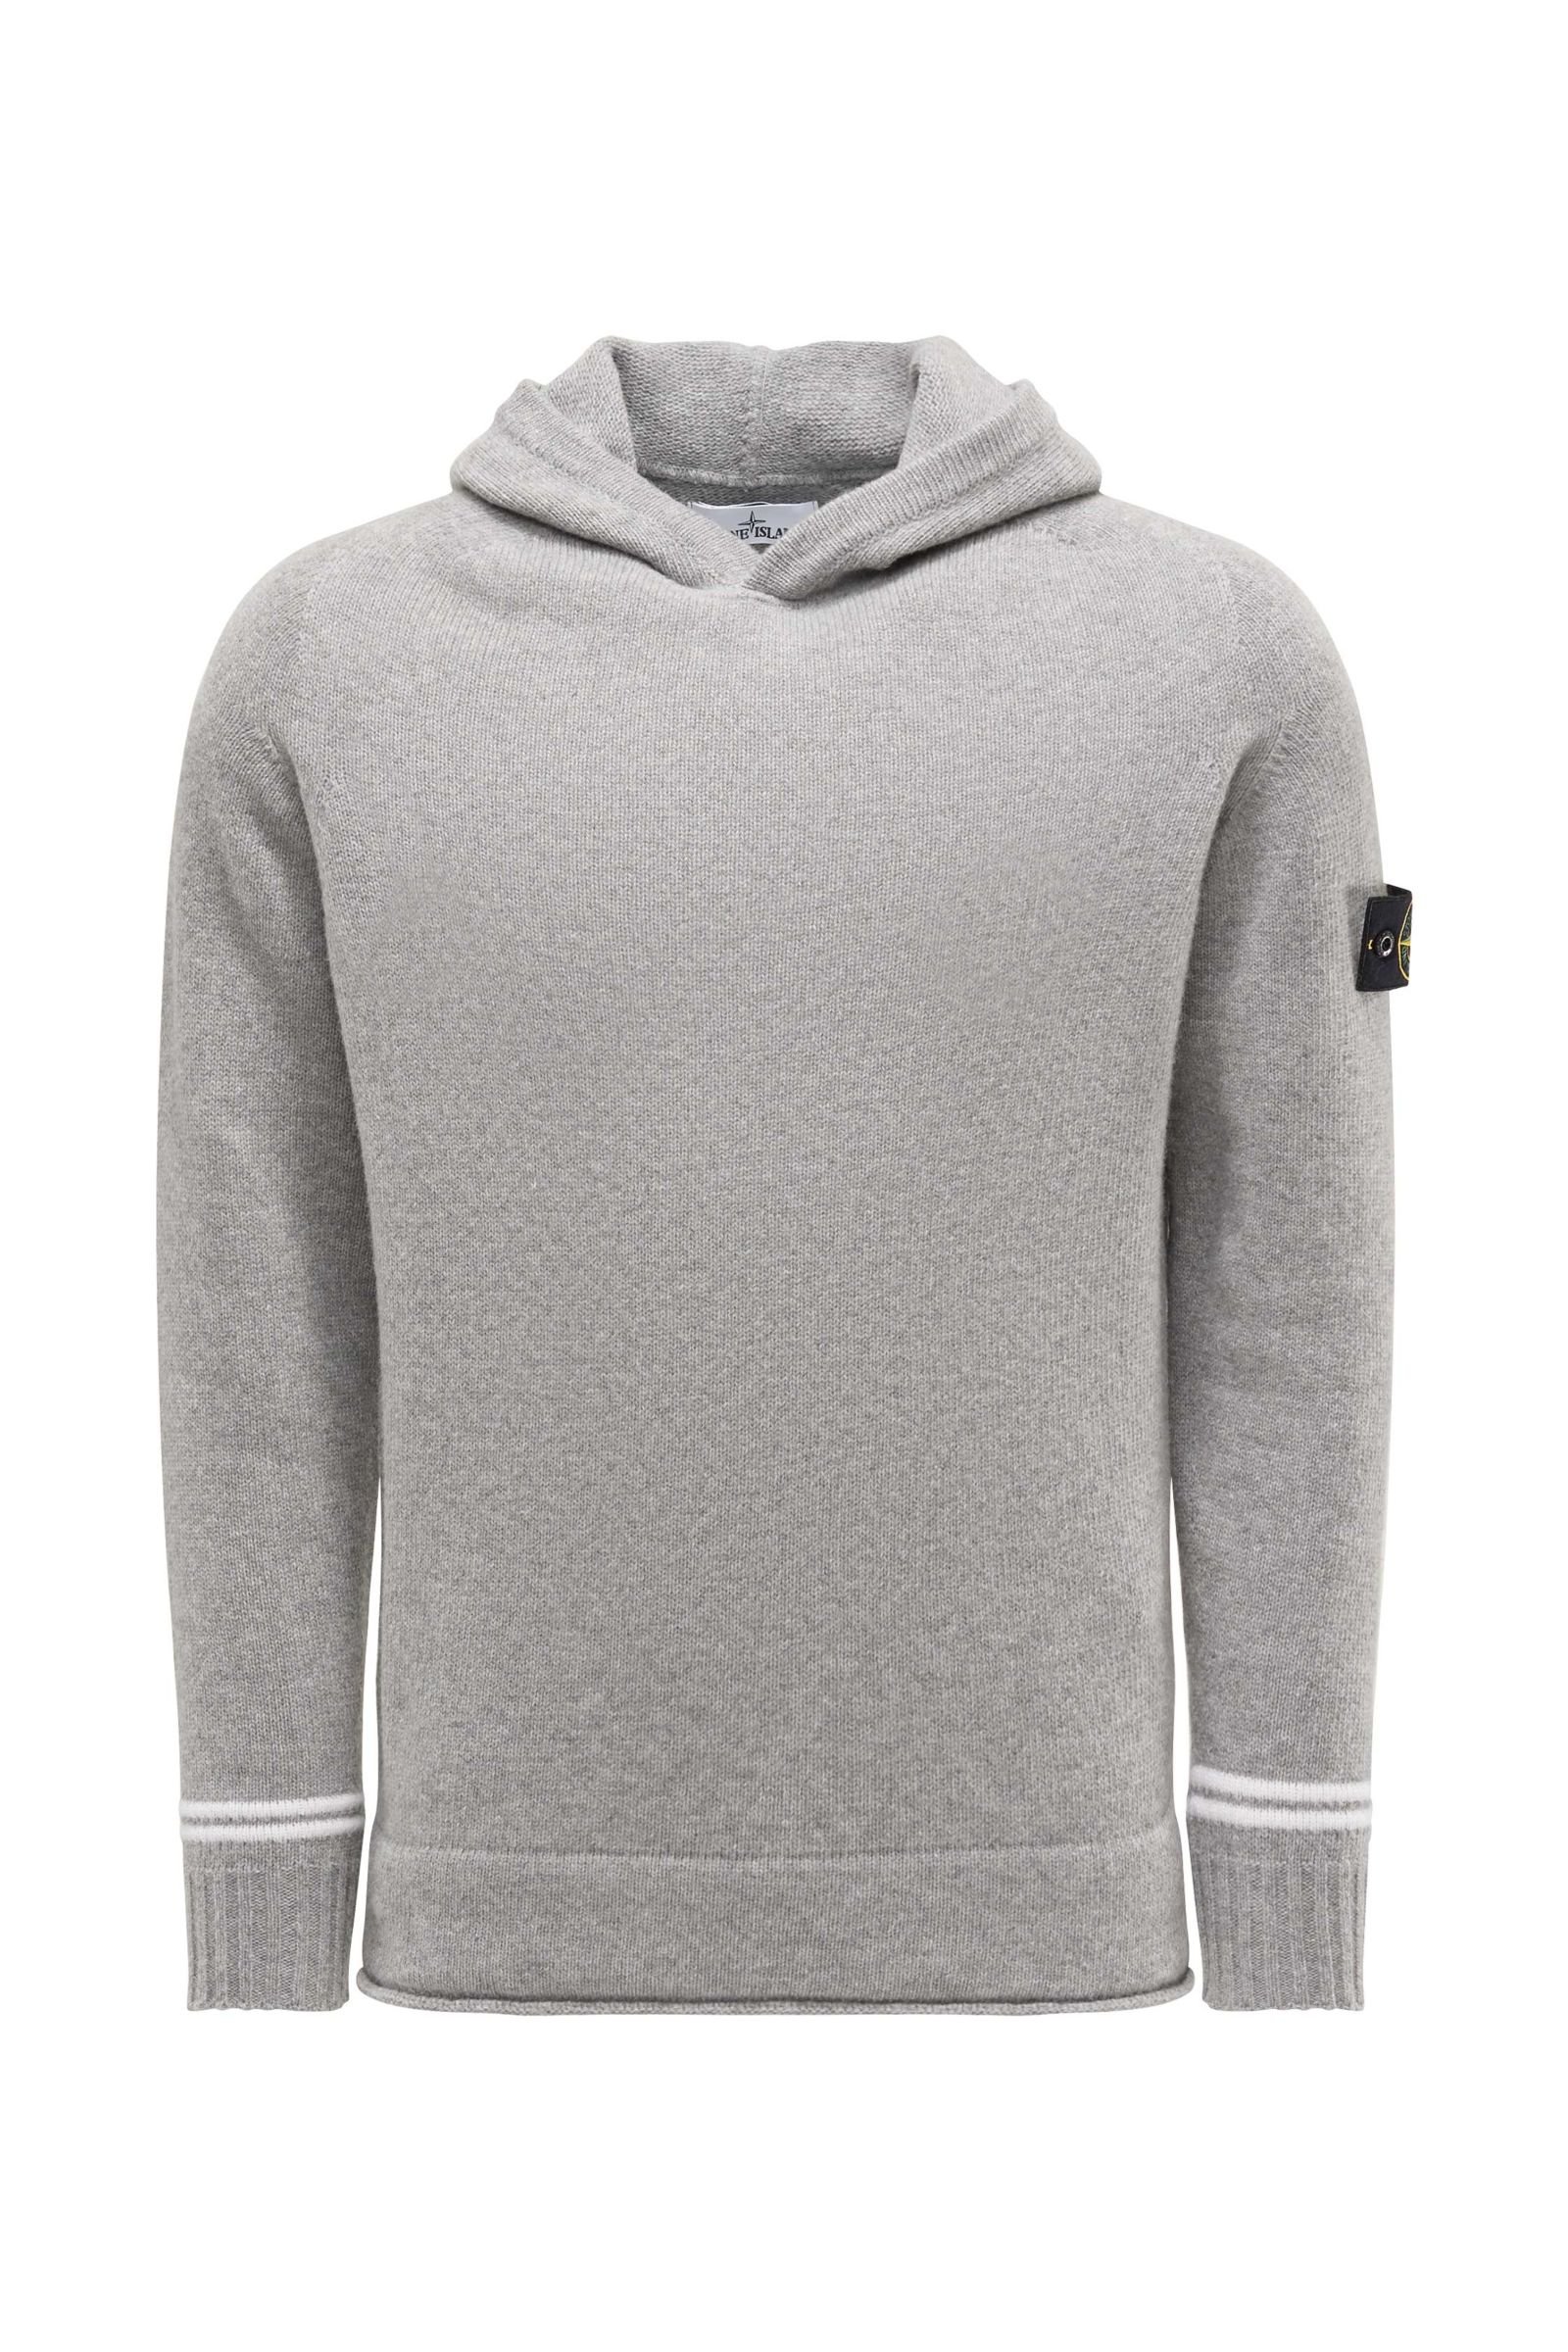 Hooded jumper light grey